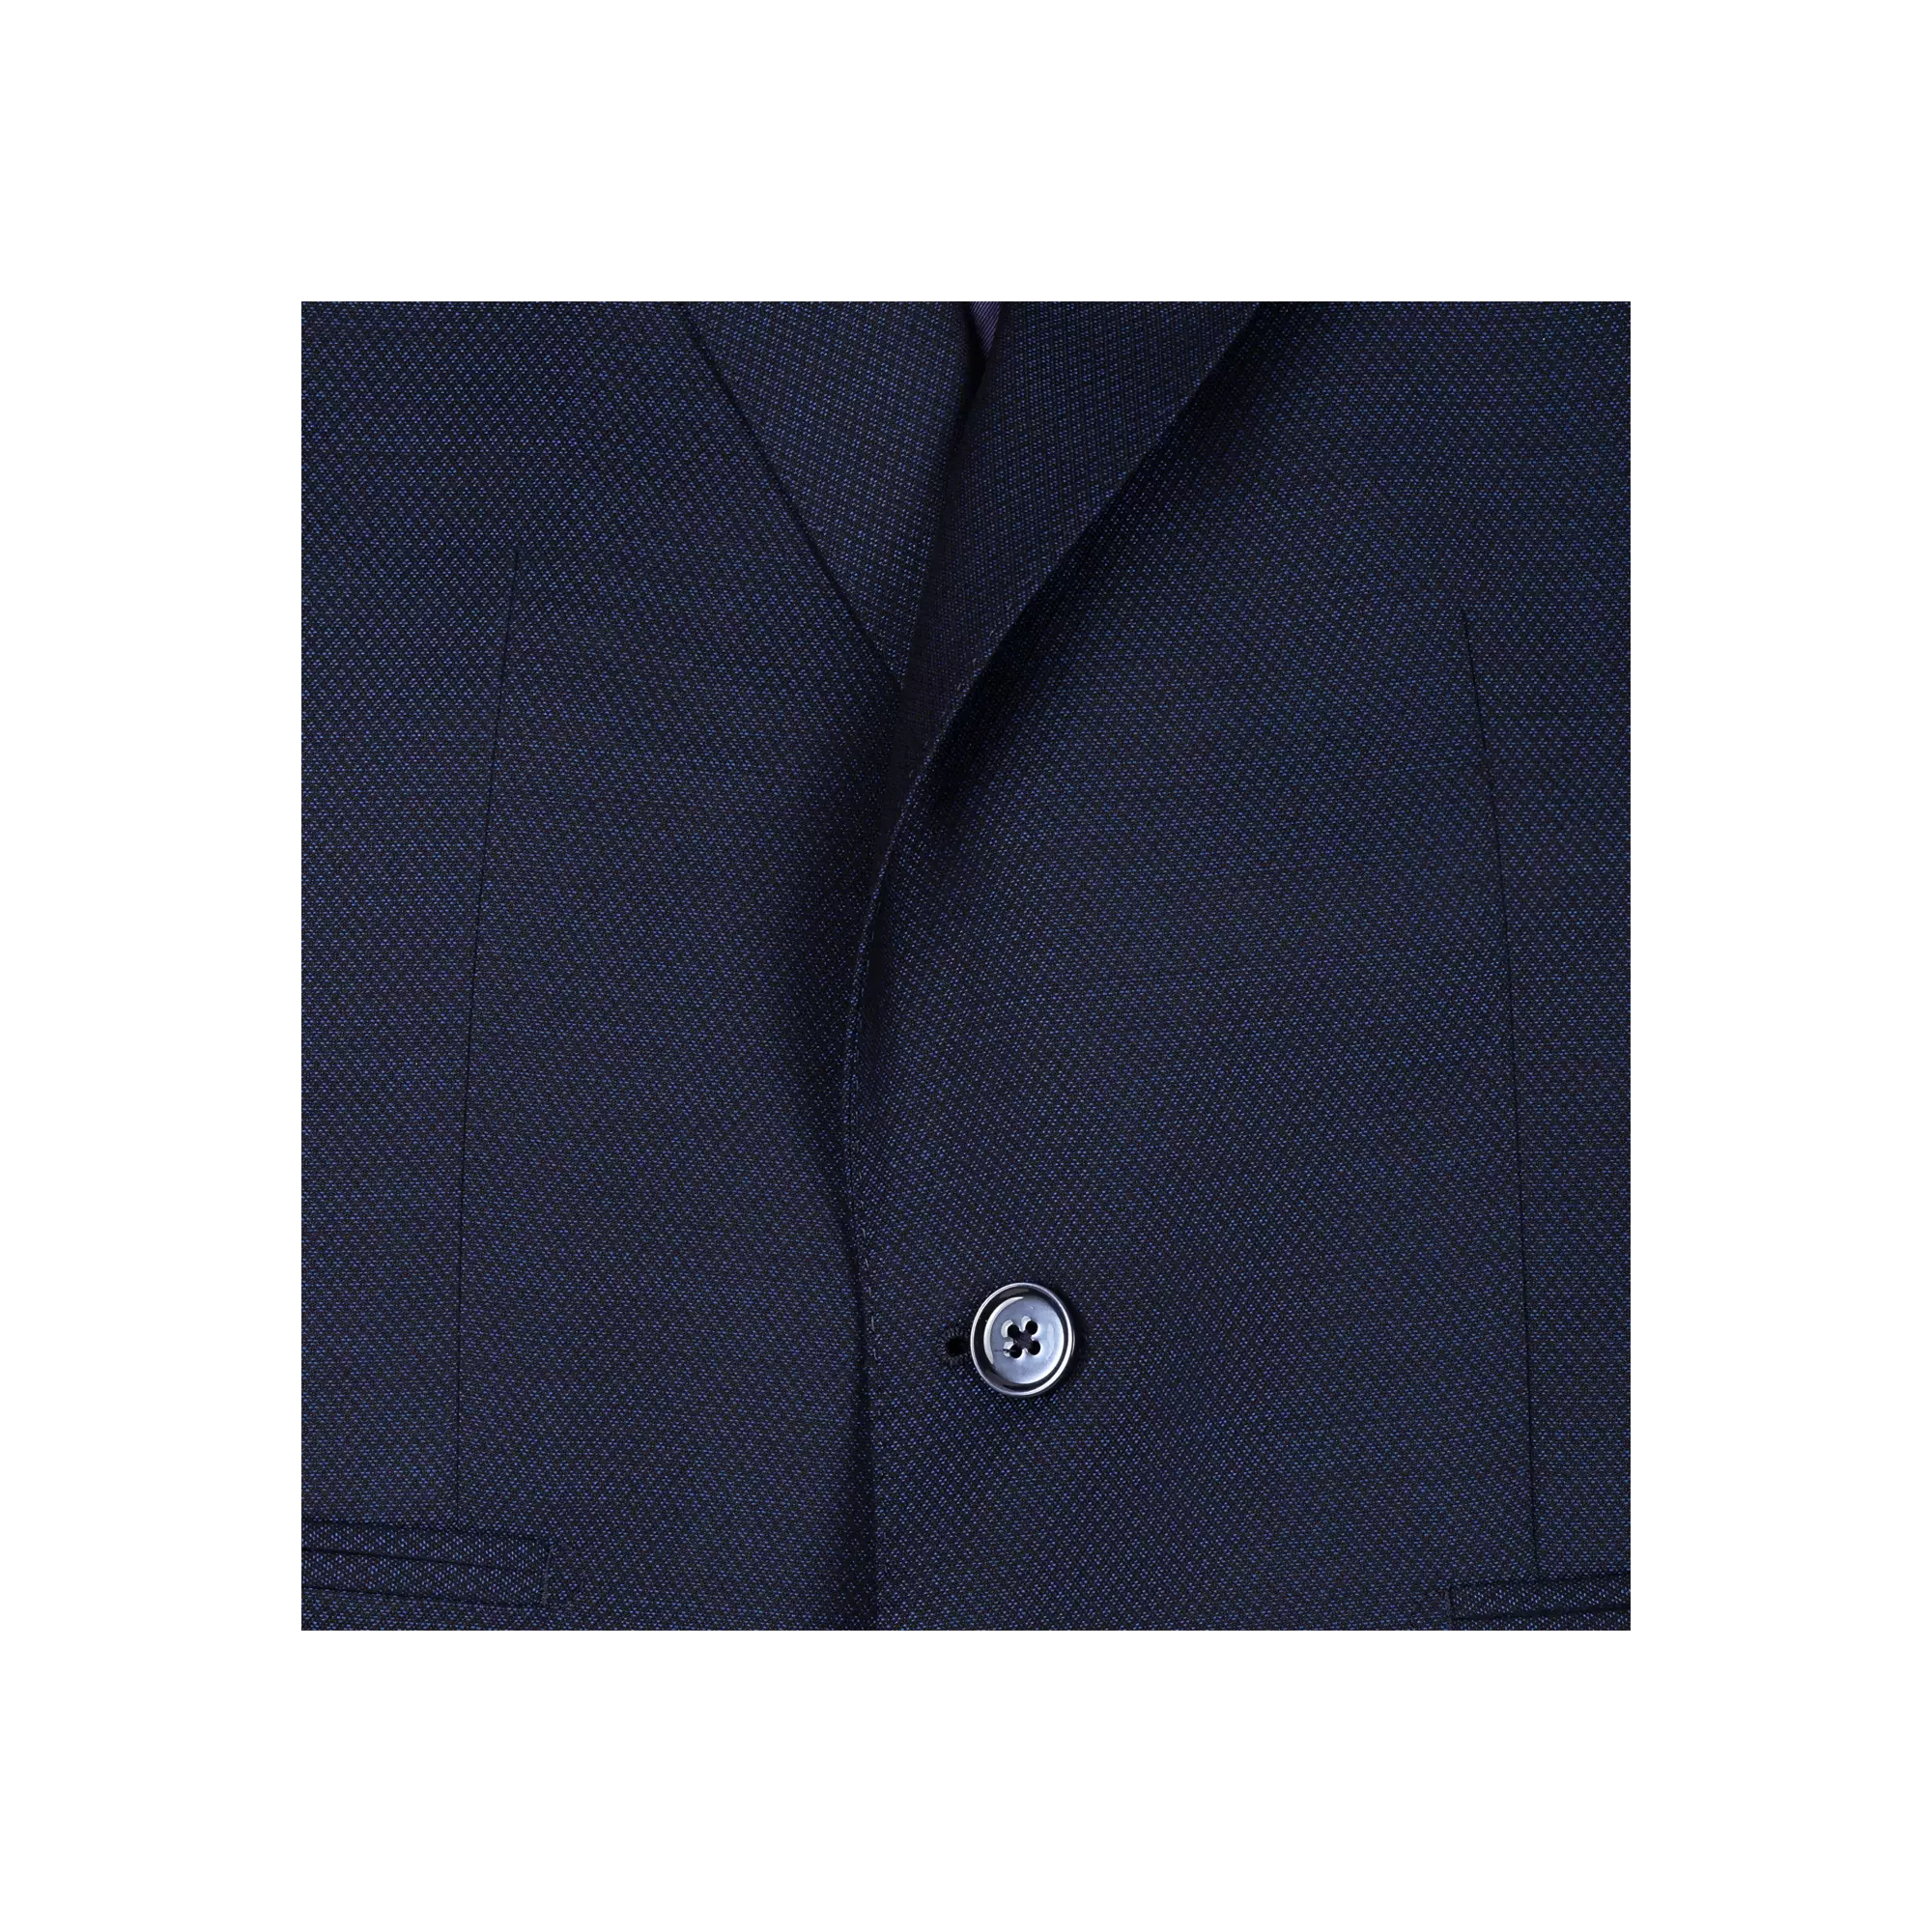 Ανδρικό Κοστούμι Με Γιλέκο Μπλε Tailor Italian Wear